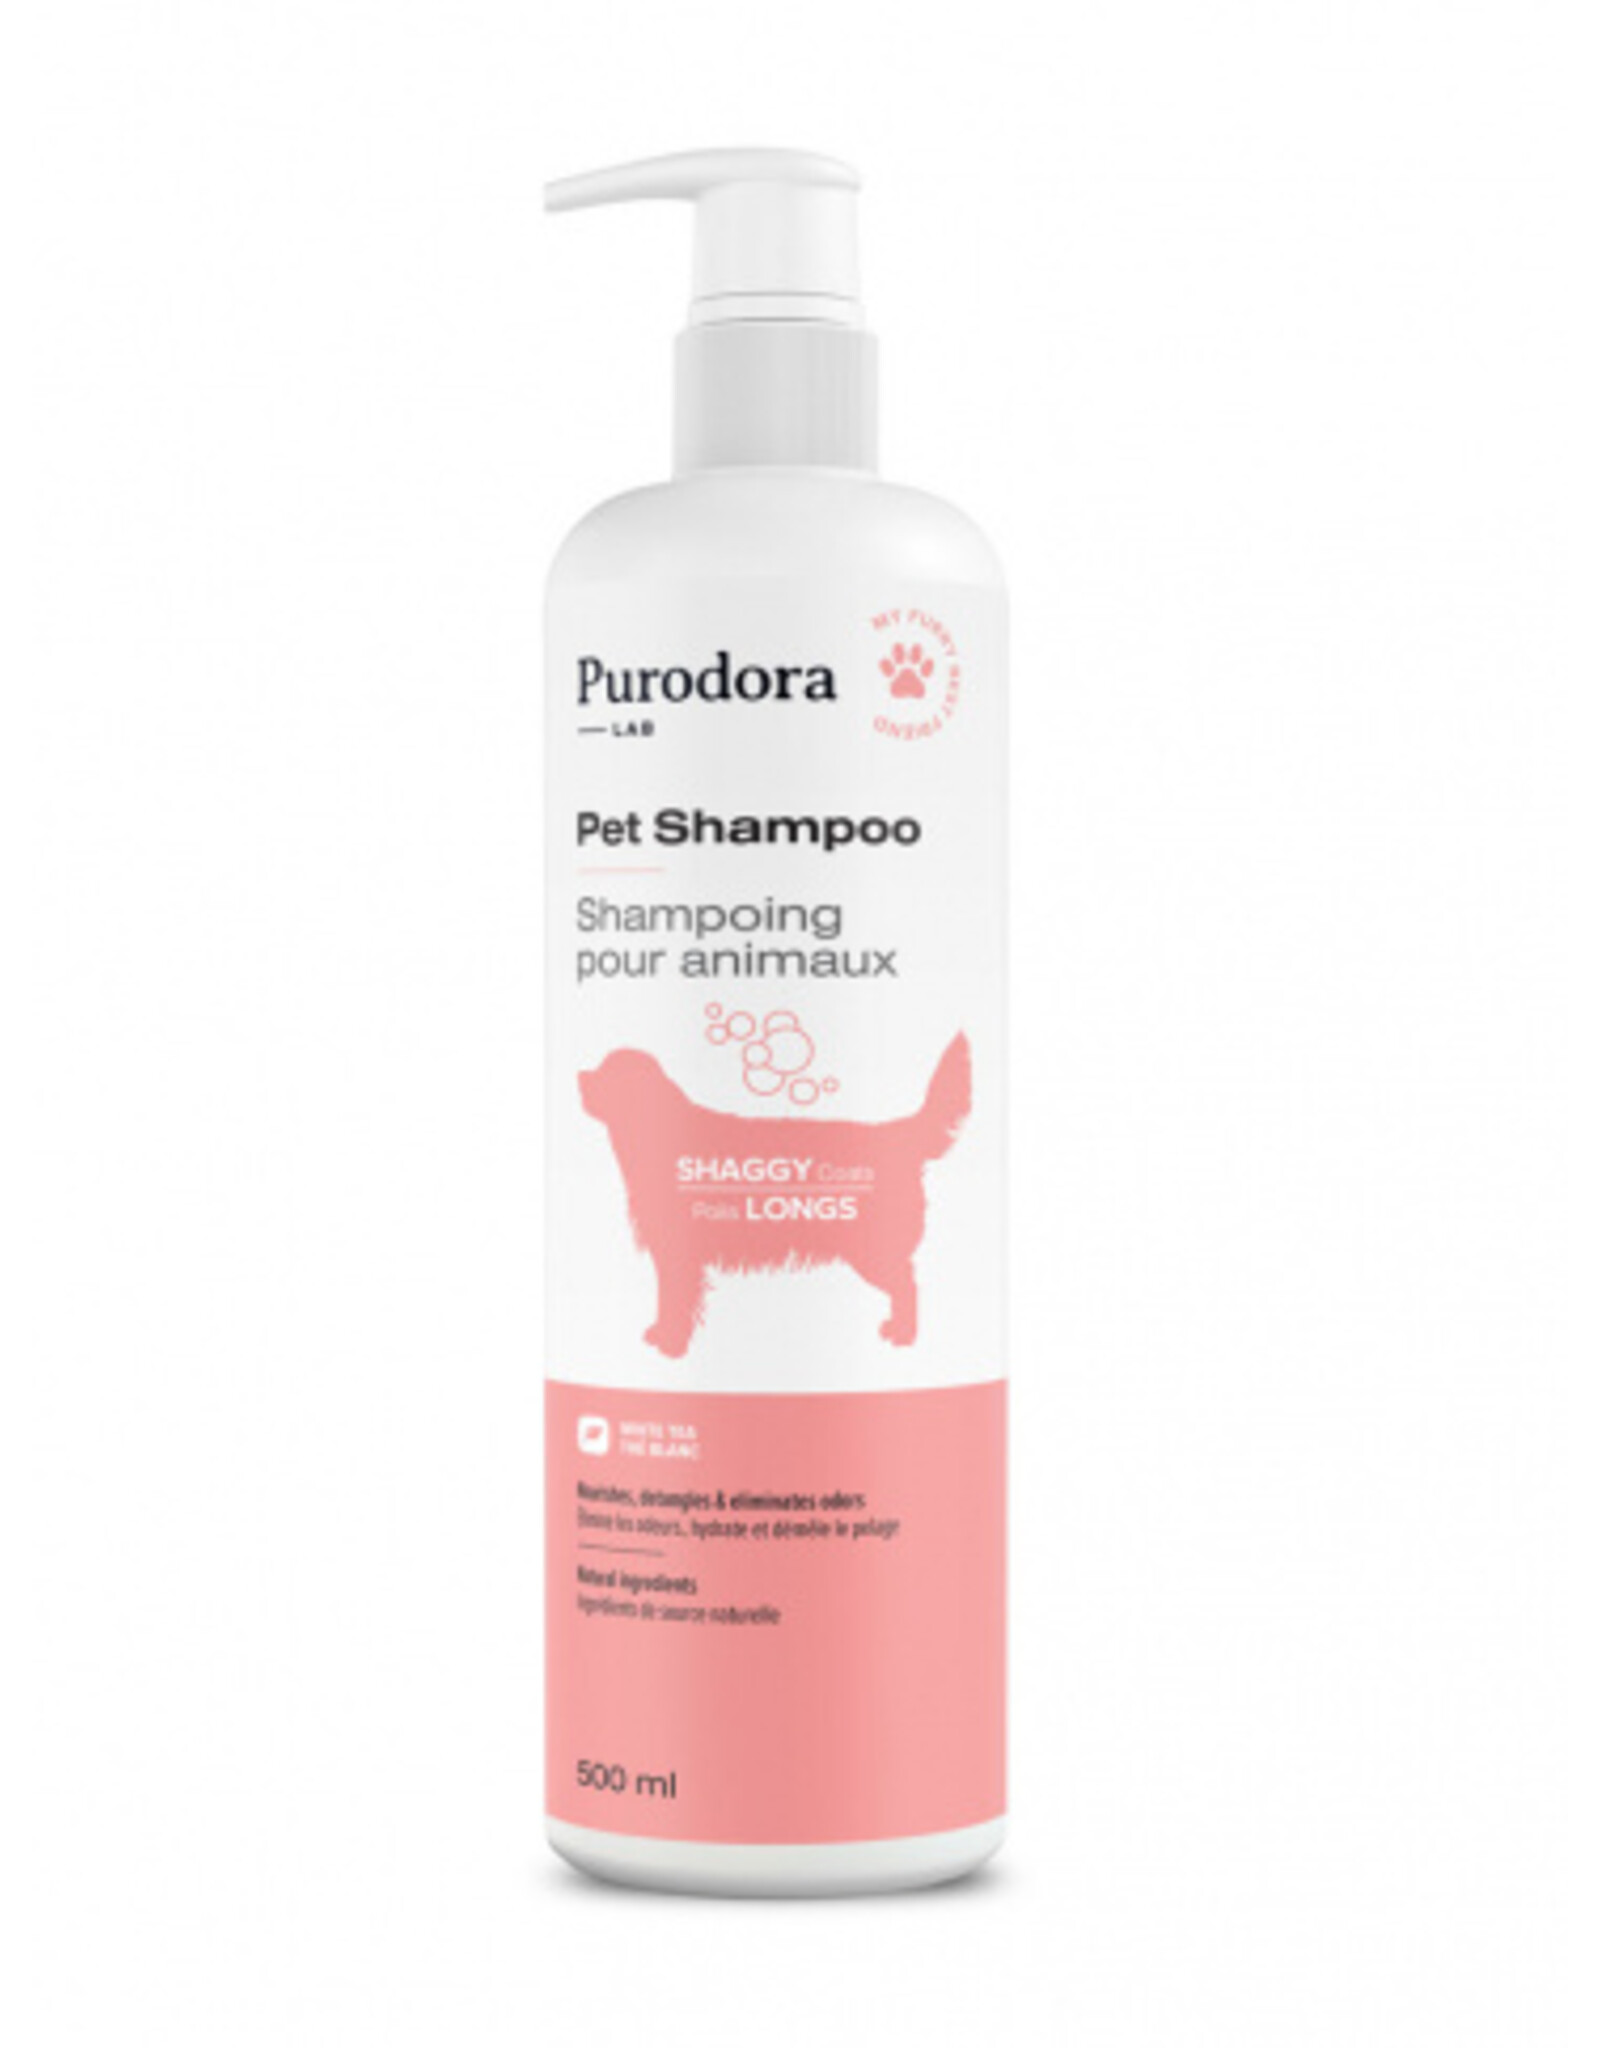 Purodora Pet Shampoo for Shaggy Coats 500ml